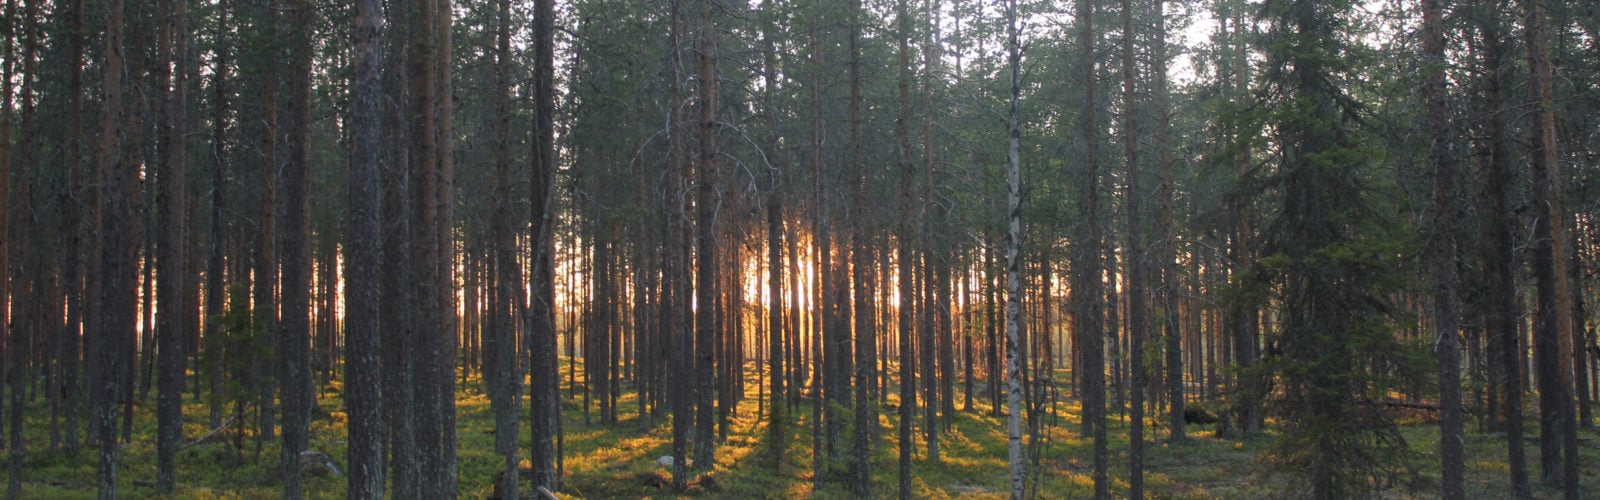 treehotel-forest-swedish-lapland